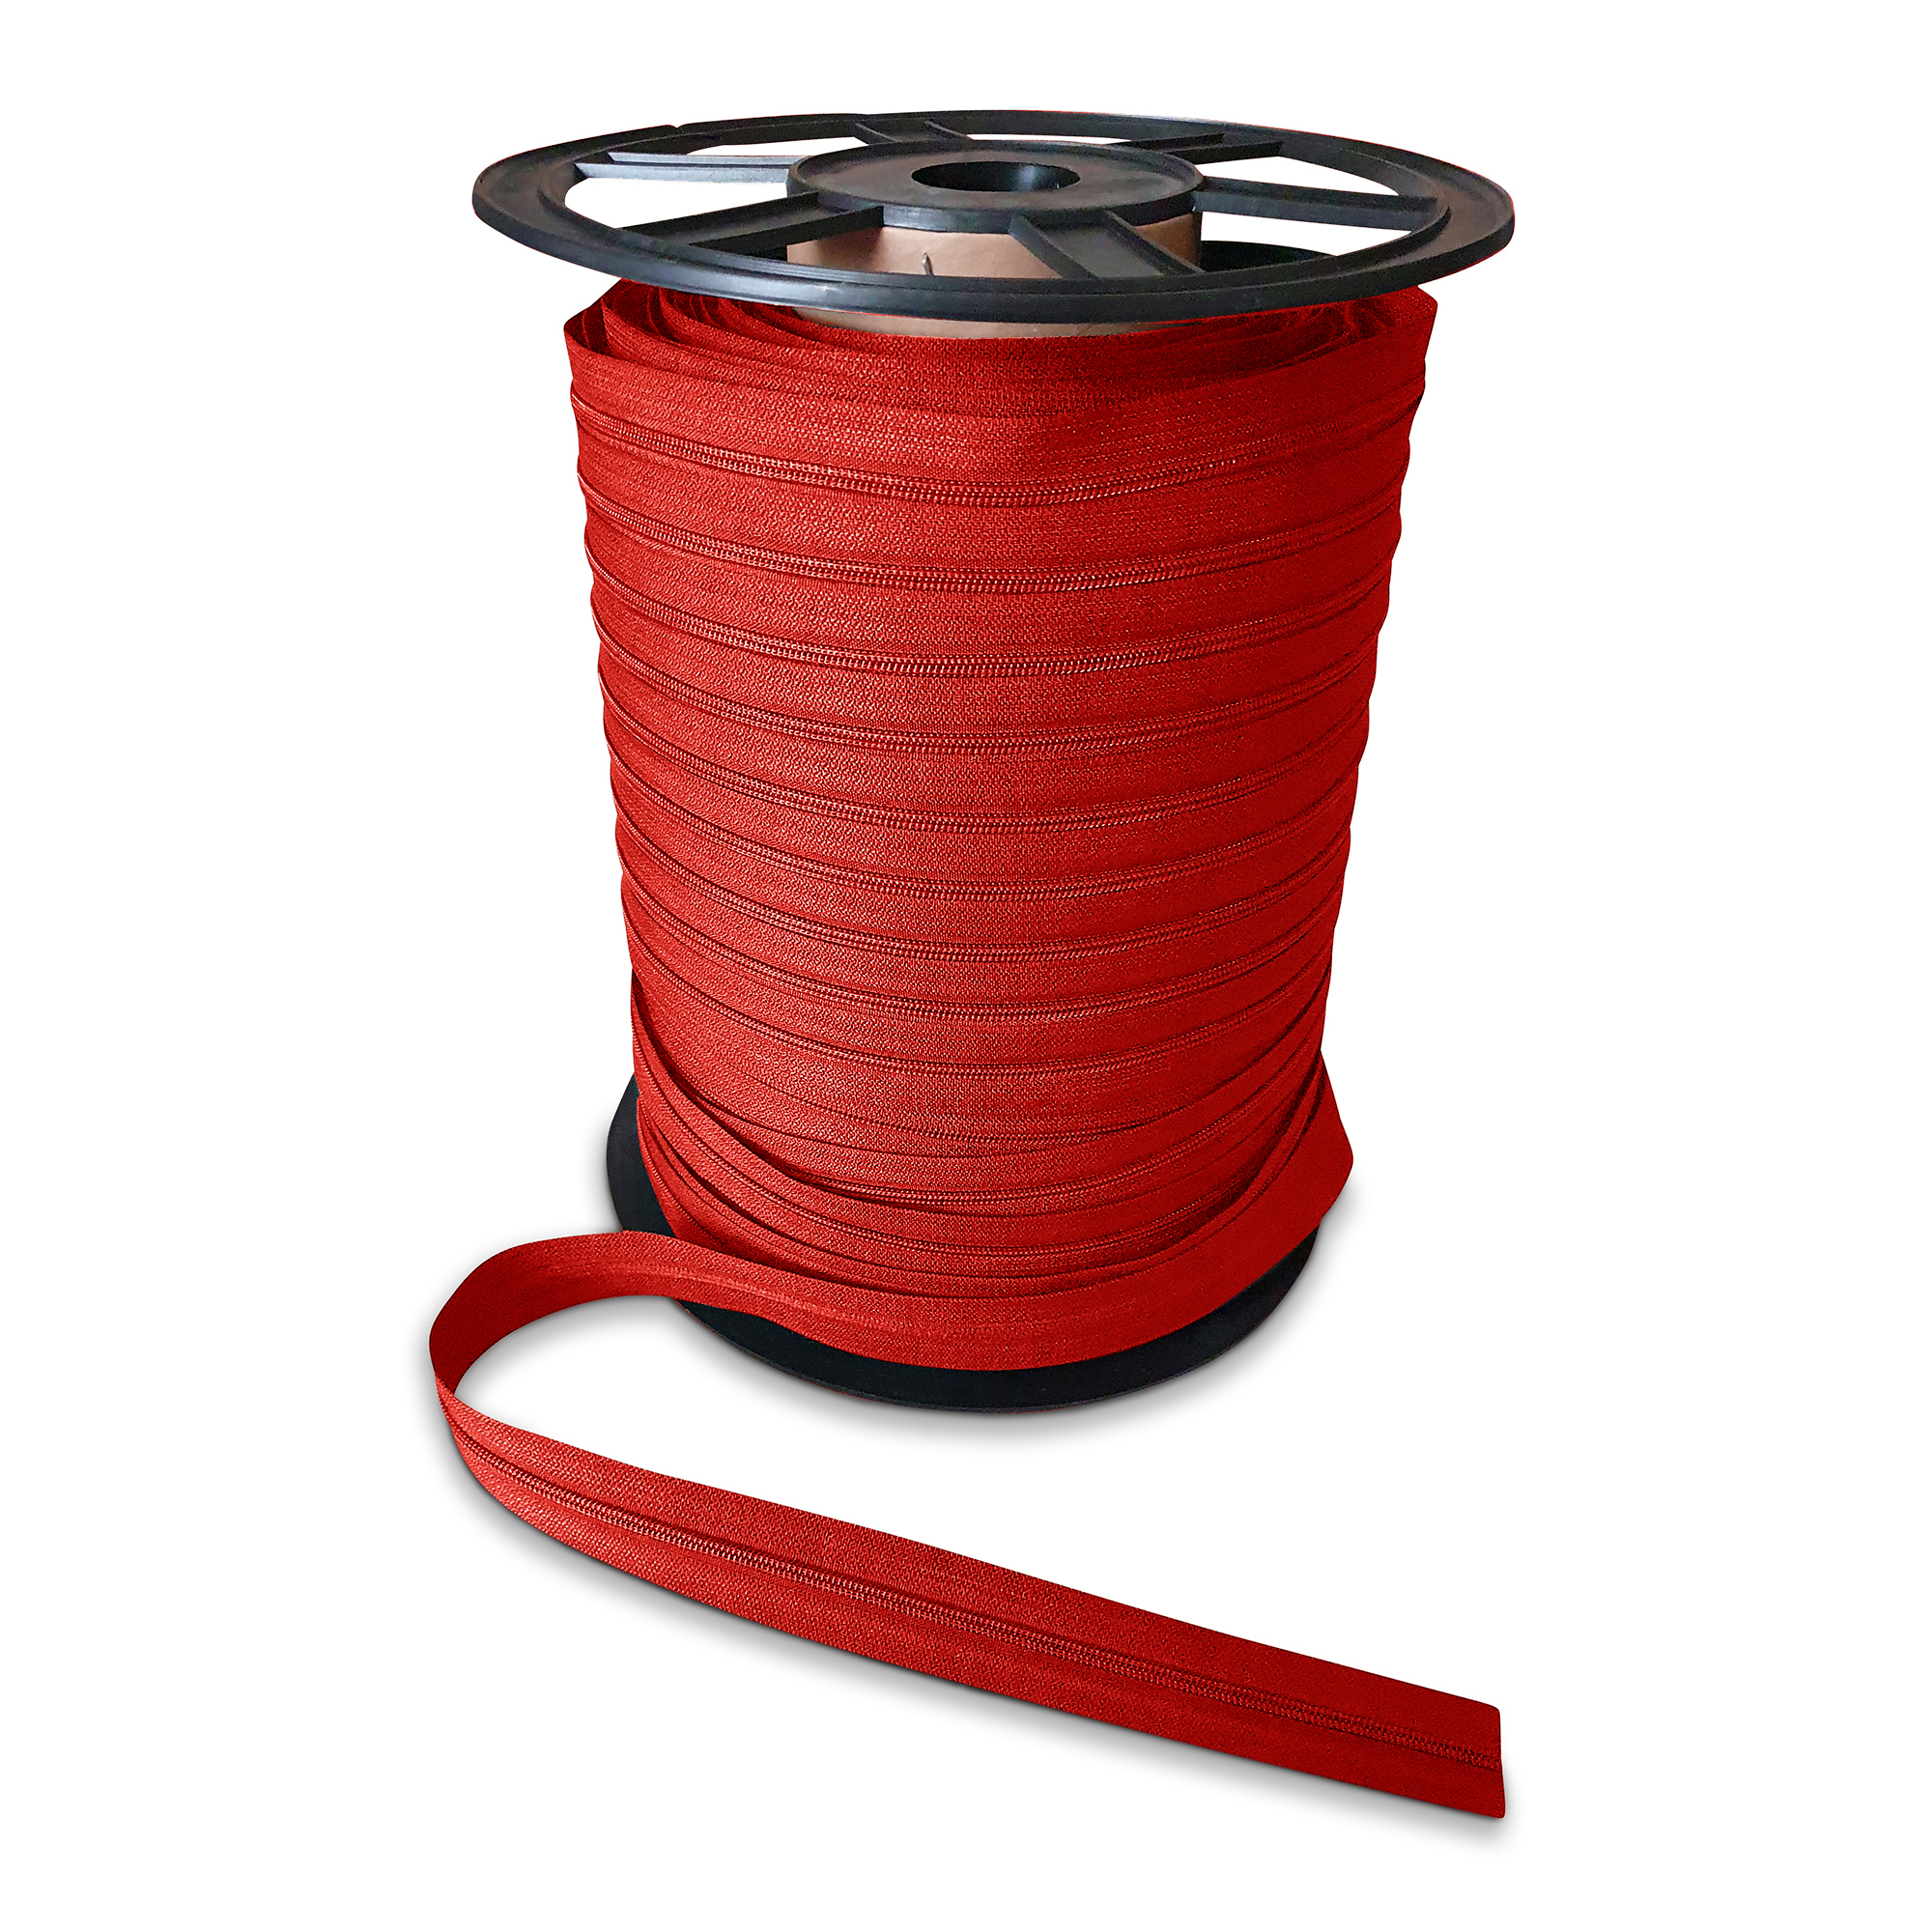 Reißverschluss rot endlos, nicht teilbar, PES-Spirale fein, 3mm, Marken-Reißverschluss Rubi/Barcelona, hochwertiger Marken-Reißverschluss von Rubi/Barcelona